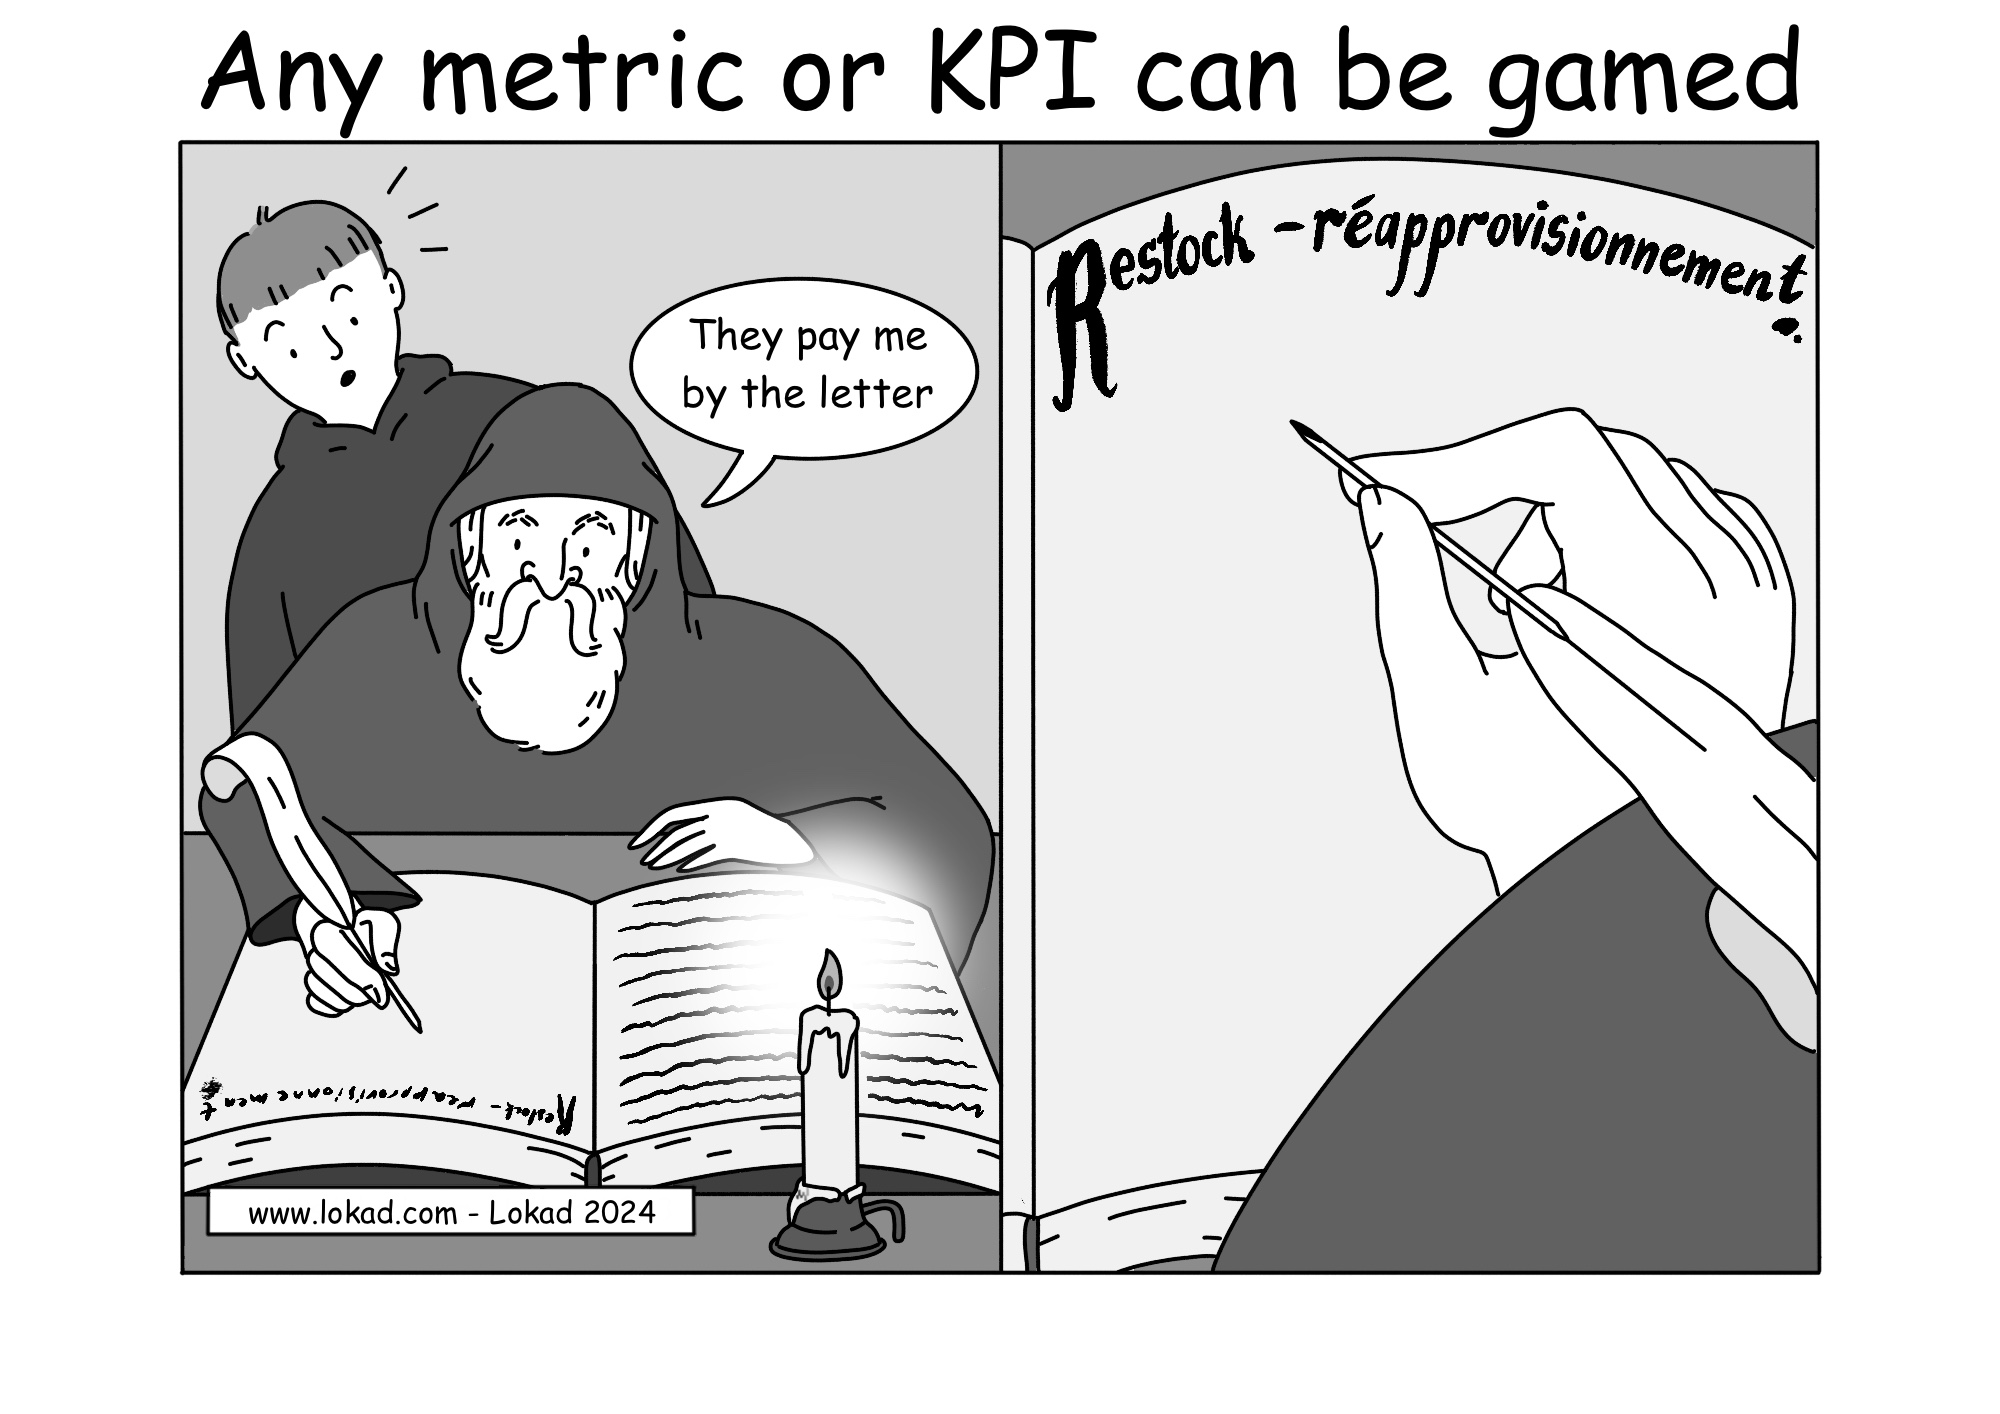 Qualsiasi metrica o KPI può essere manipolato.